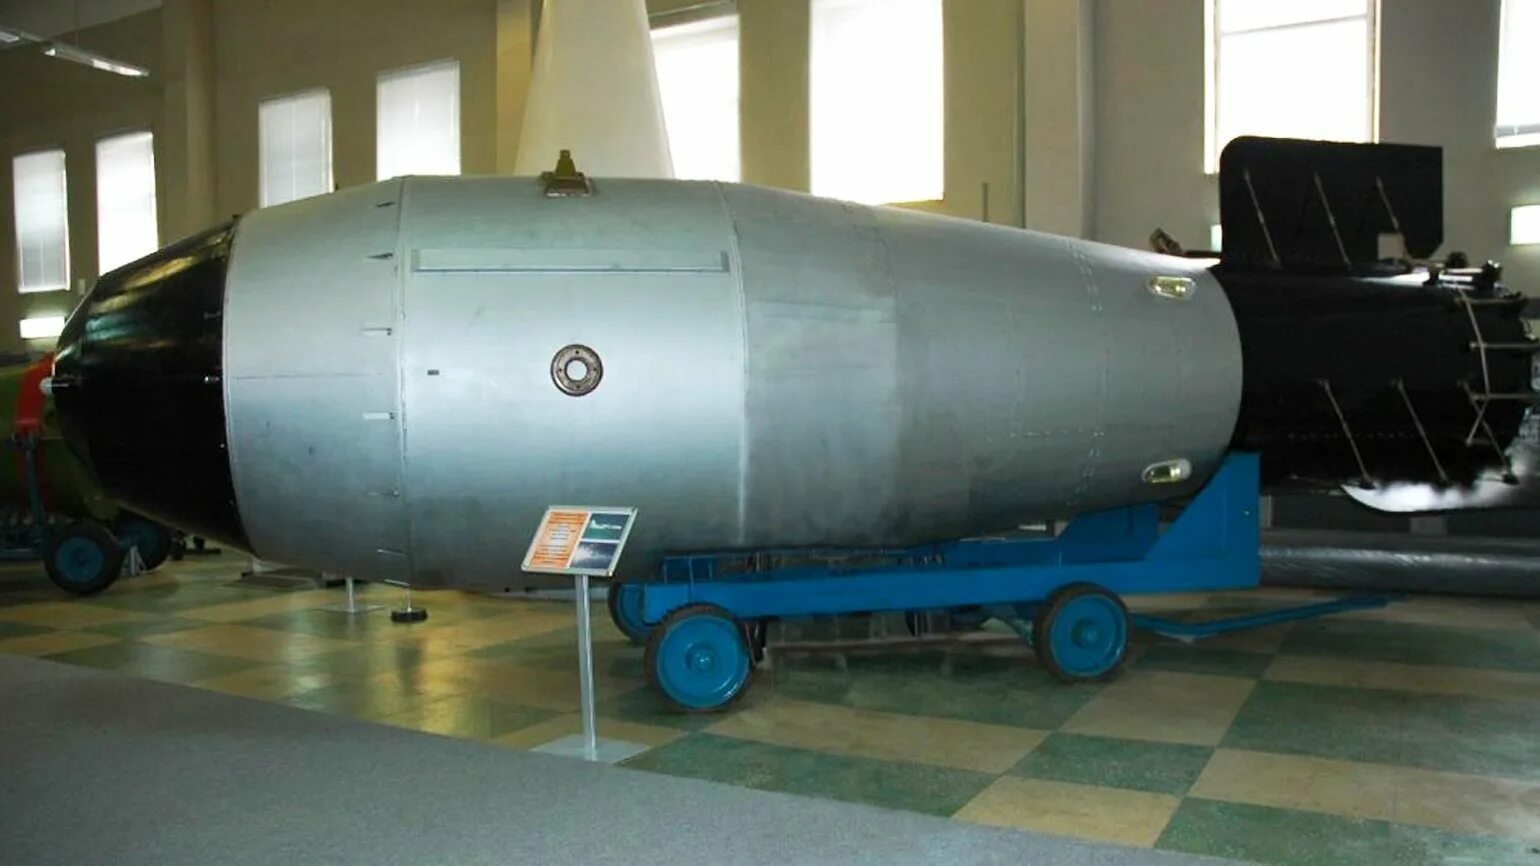 Самая мощная водородная бомба. Ан602 царь-бомба. Термоядерная бомб ан602 (царь-бомба). Царь бомба Саров. Термоядерная бомба ан602 ("Кузькина мать").